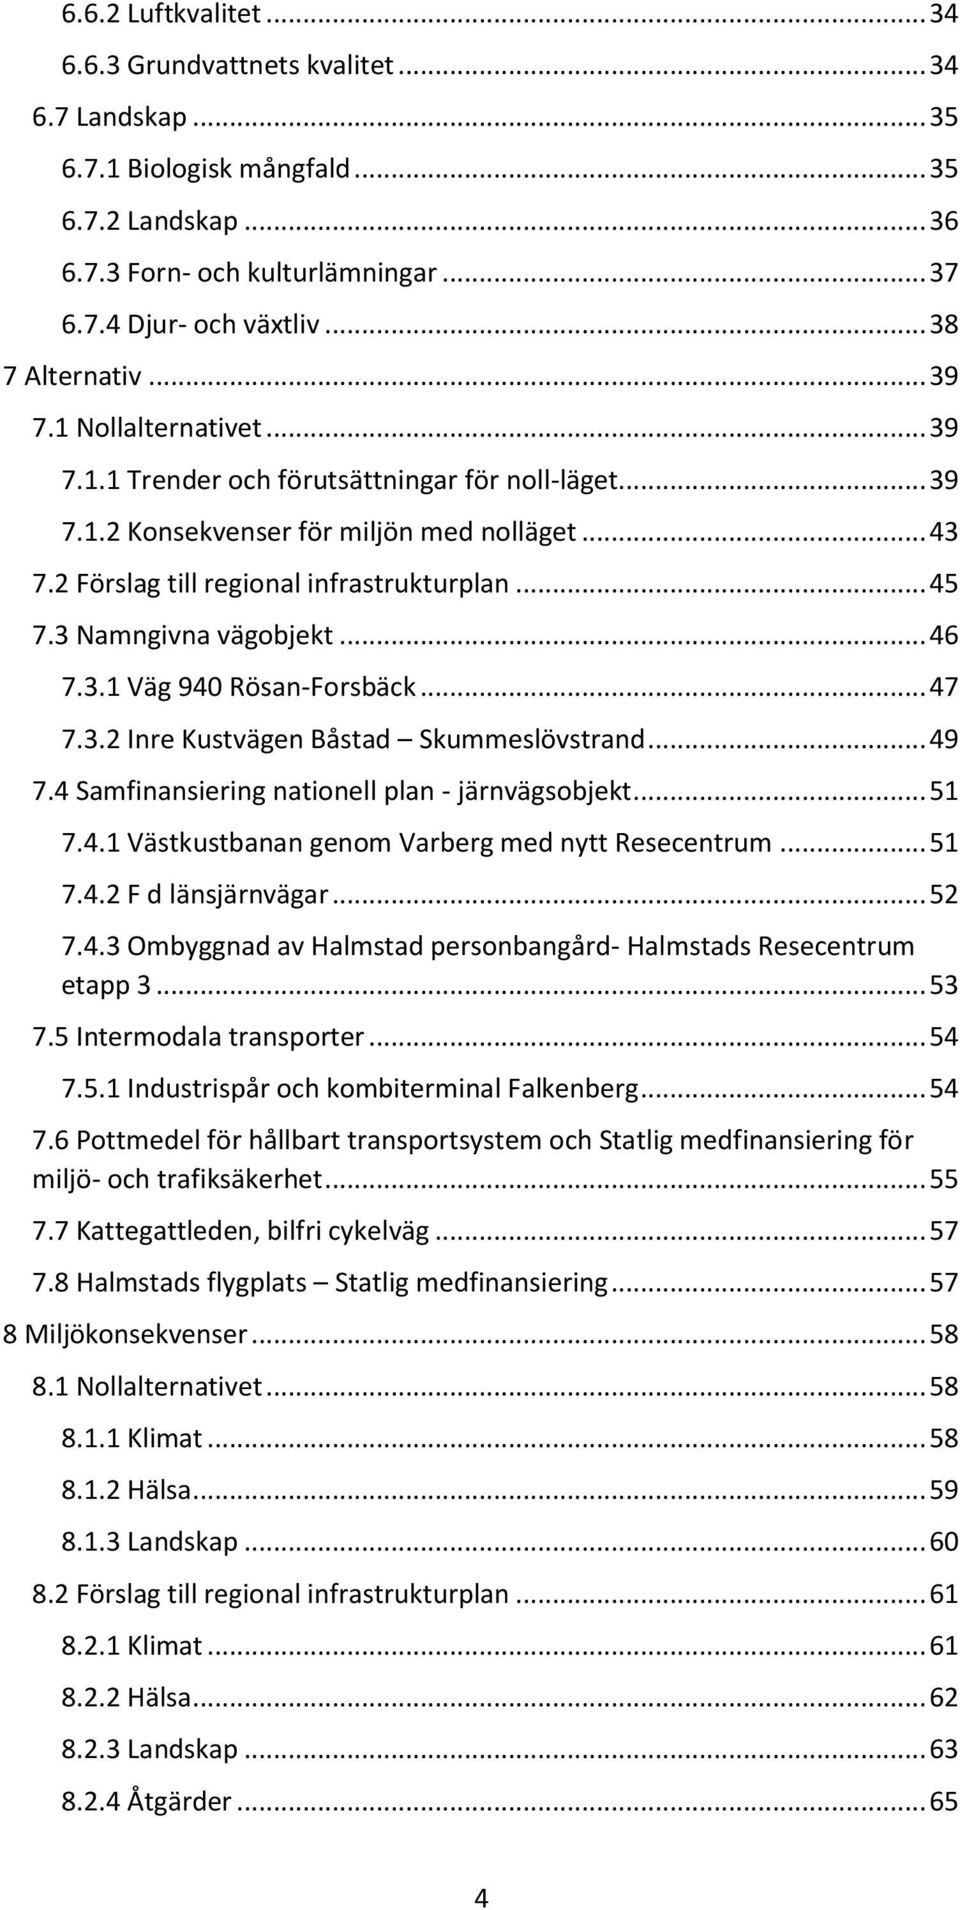 .. 45 7.3 Namngivna vägobjekt... 46 7.3.1 Väg 940 Rösan-Forsbäck... 47 7.3.2 Inre Kustvägen Båstad Skummeslövstrand... 49 7.4 Samfinansiering nationell plan - järnvägsobjekt... 51 7.4.1 Västkustbanan genom Varberg med nytt Resecentrum.